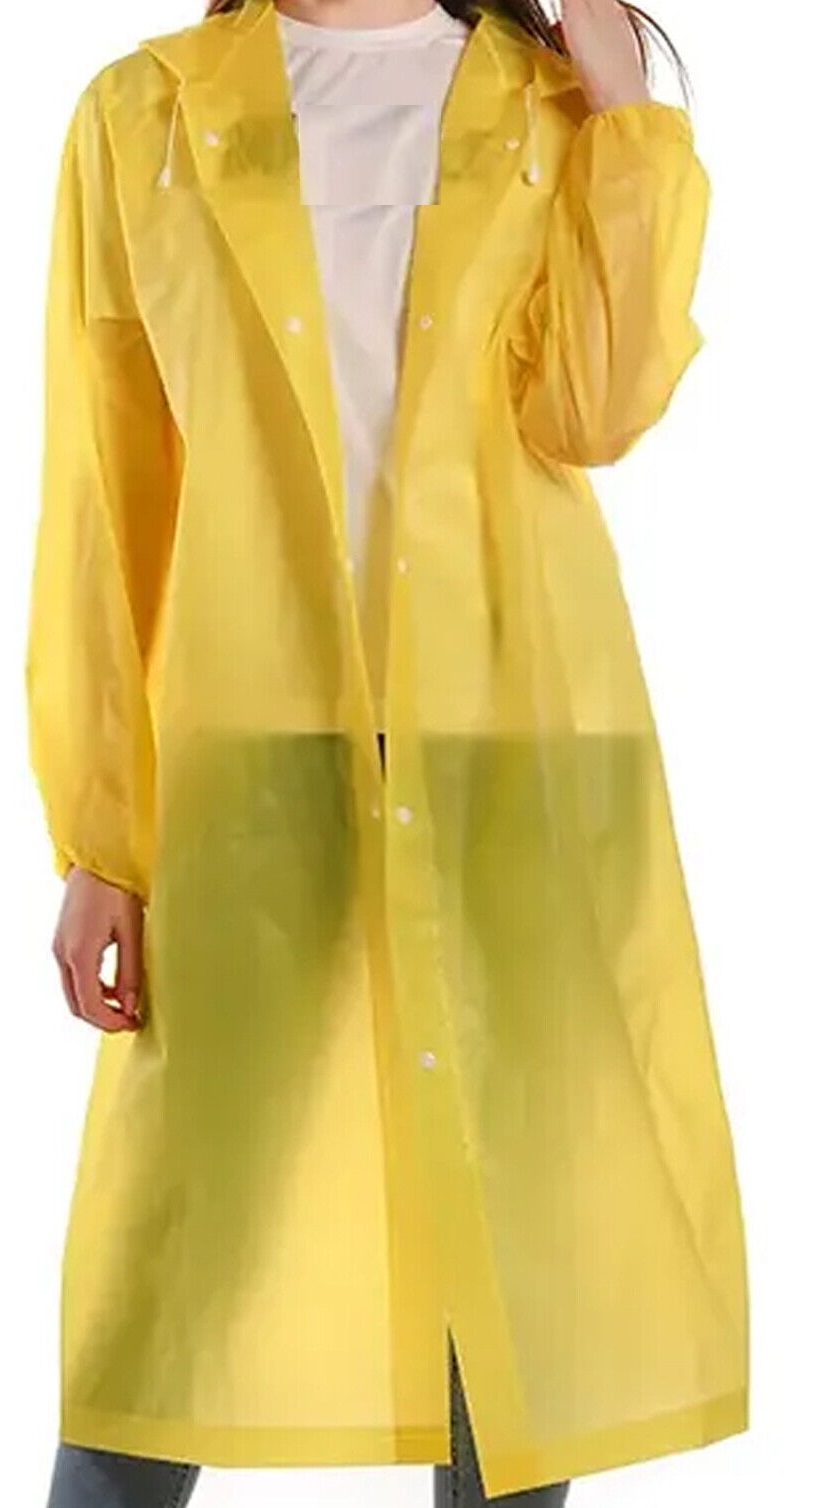 Yellow Extra Large Travel Raincoat Rain Jacket